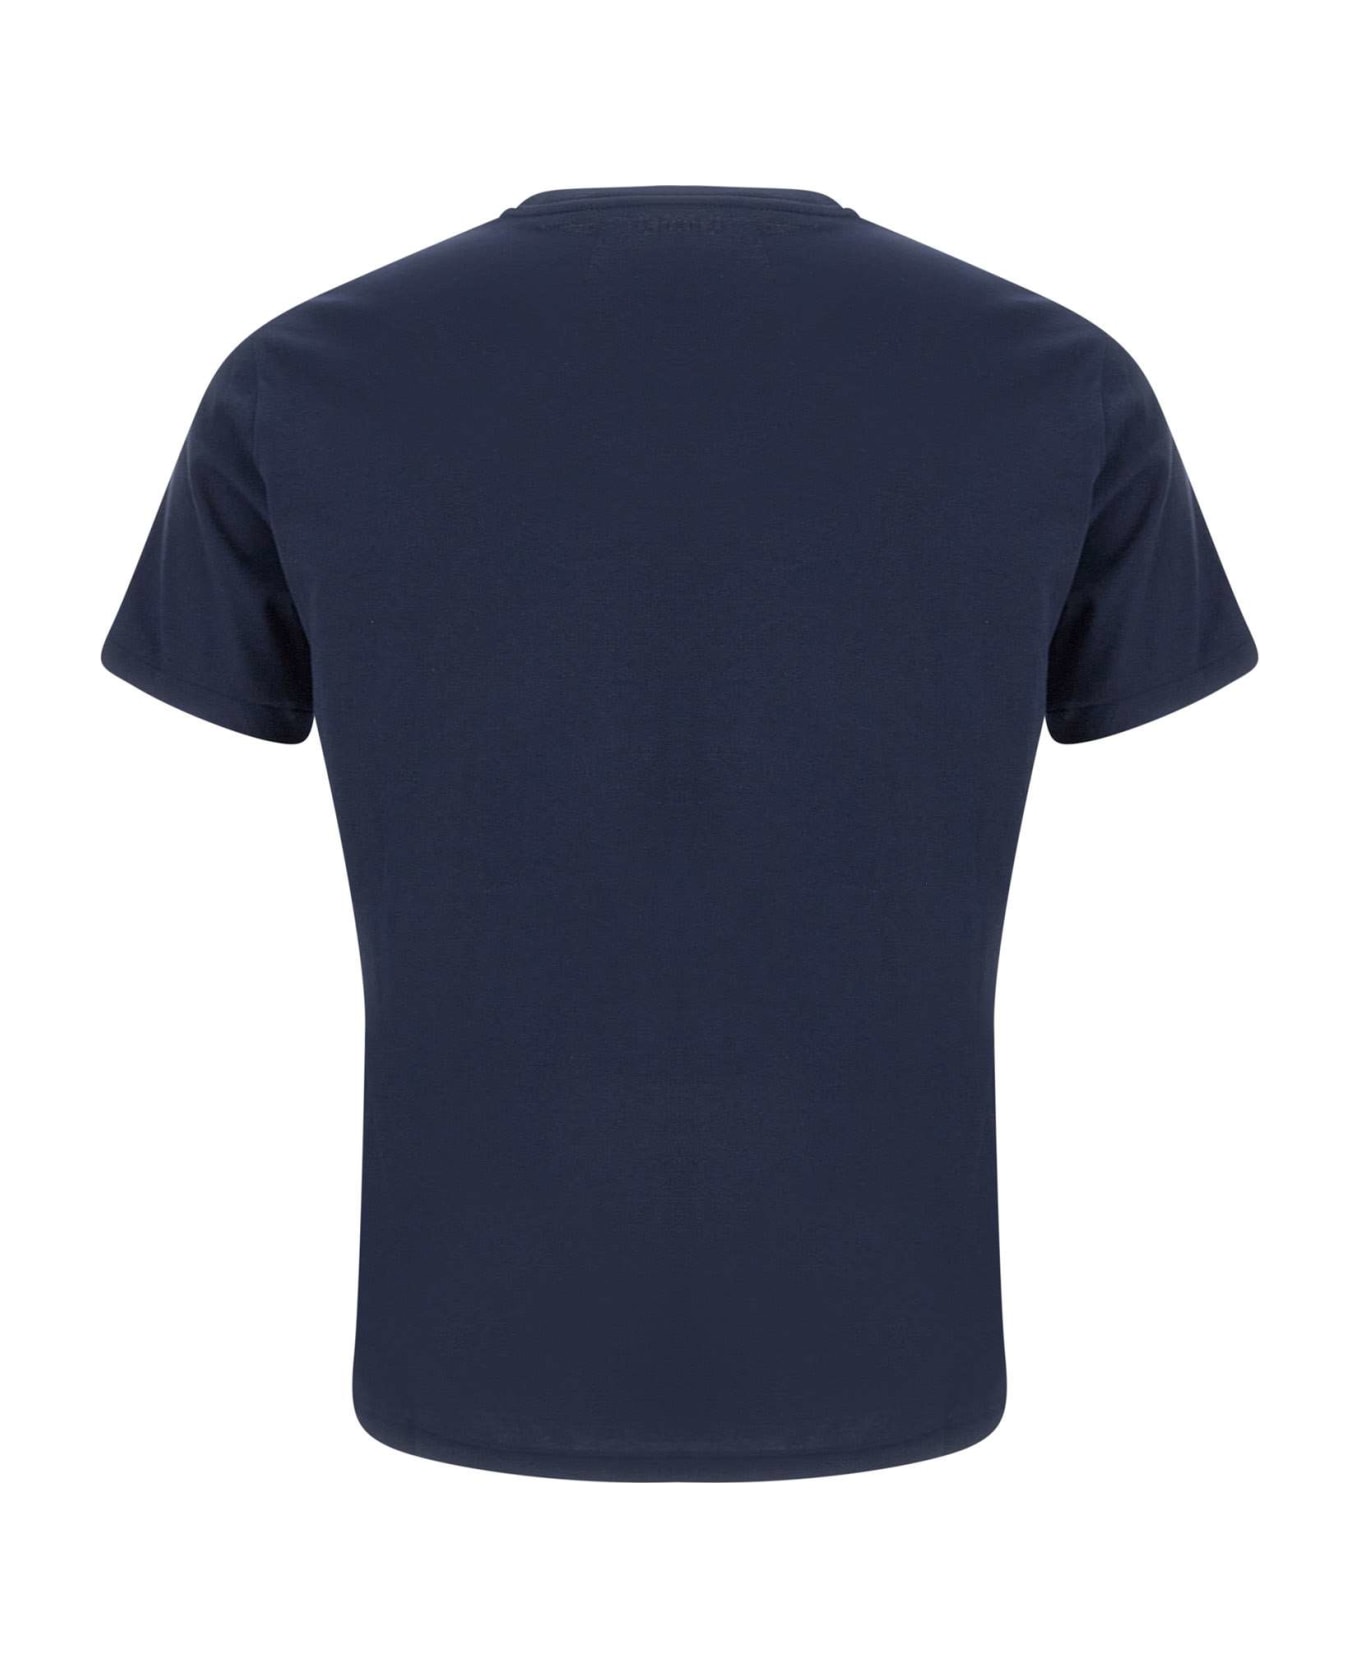 Polo Ralph Lauren Cotton T-shirt